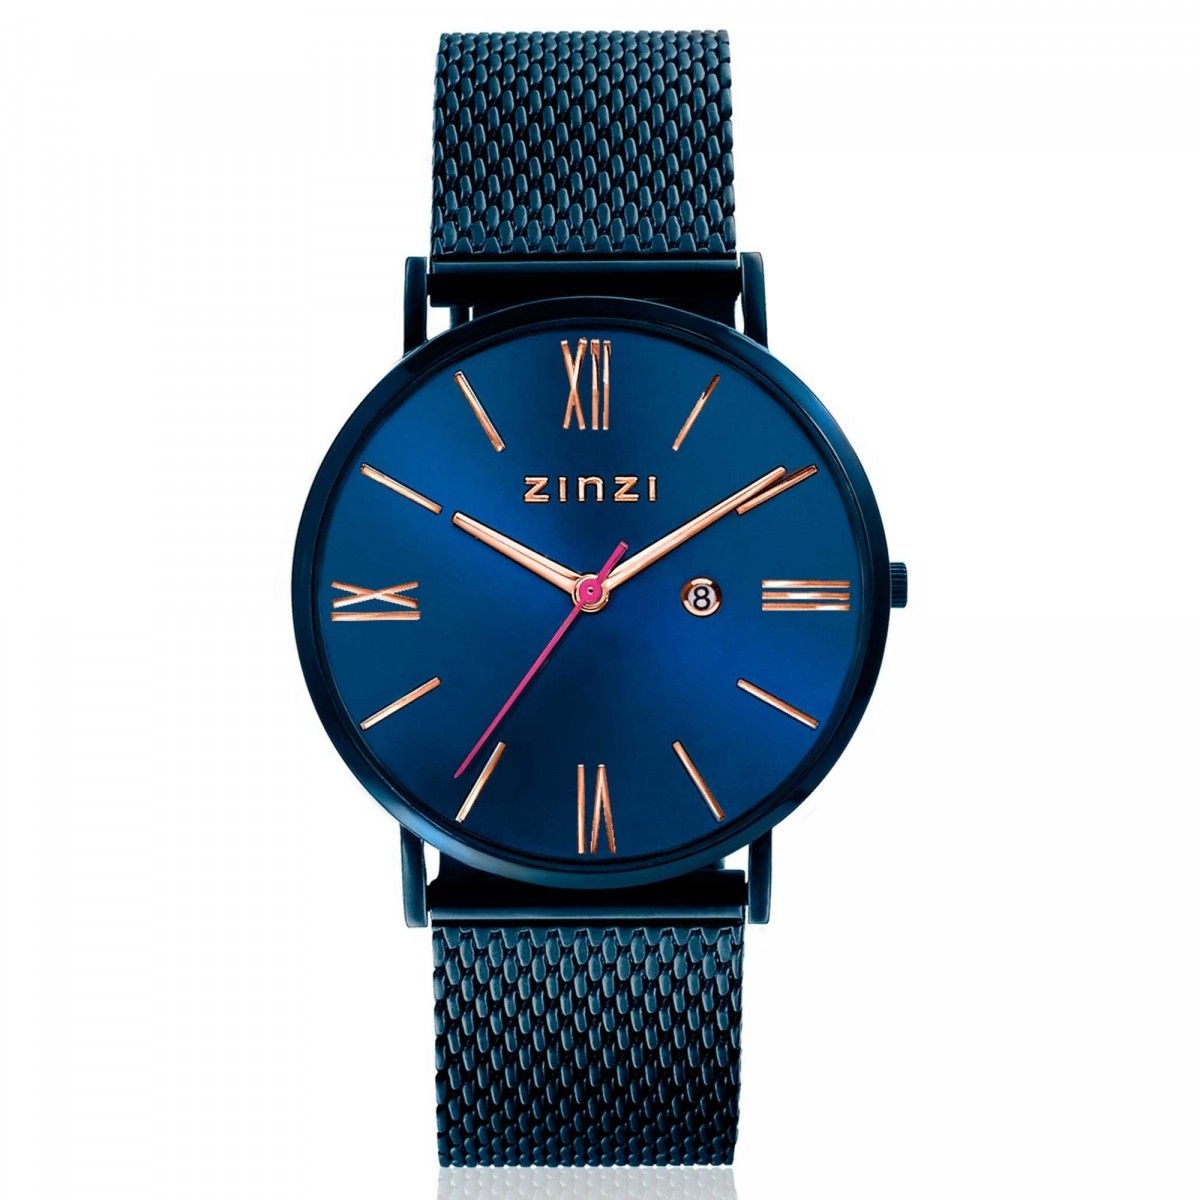 Zinzi ZIW514M horloge - band blauwgekleurd - 34mm + gratis Zinzi armbandje, exclusief en kwalitatief hoogwaardig. Ontdek nu!